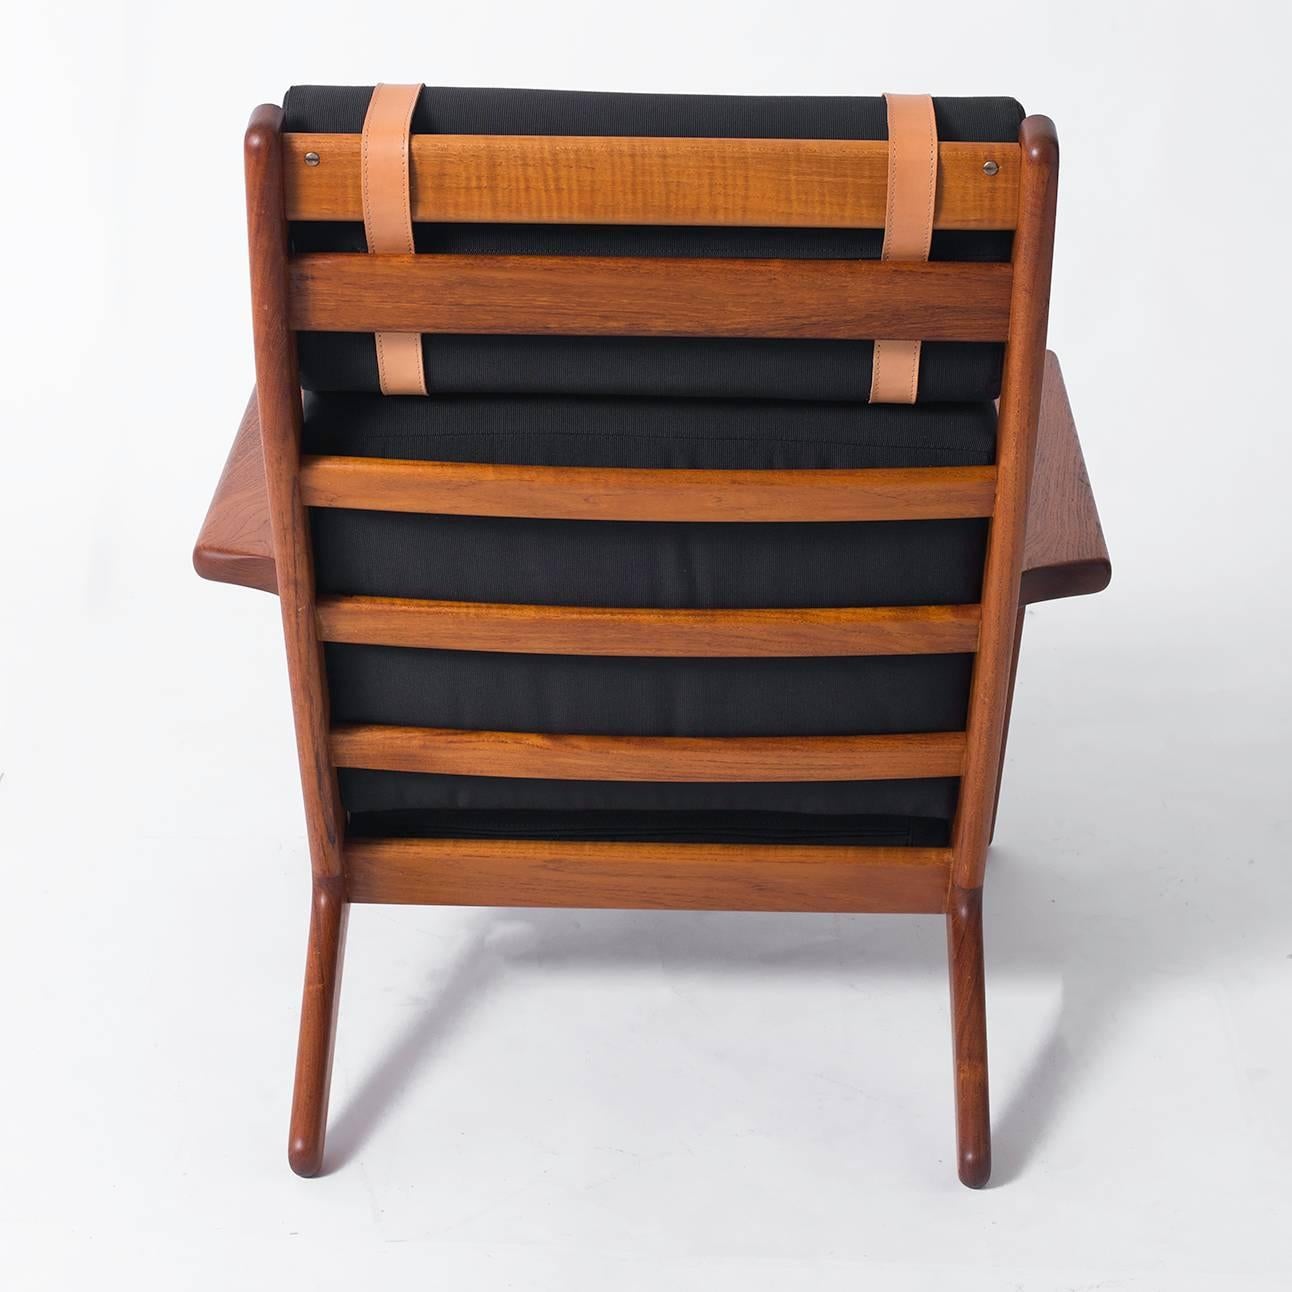 Danish Hans Wegner High-Backed Teak Lounge Chair for GETAMA